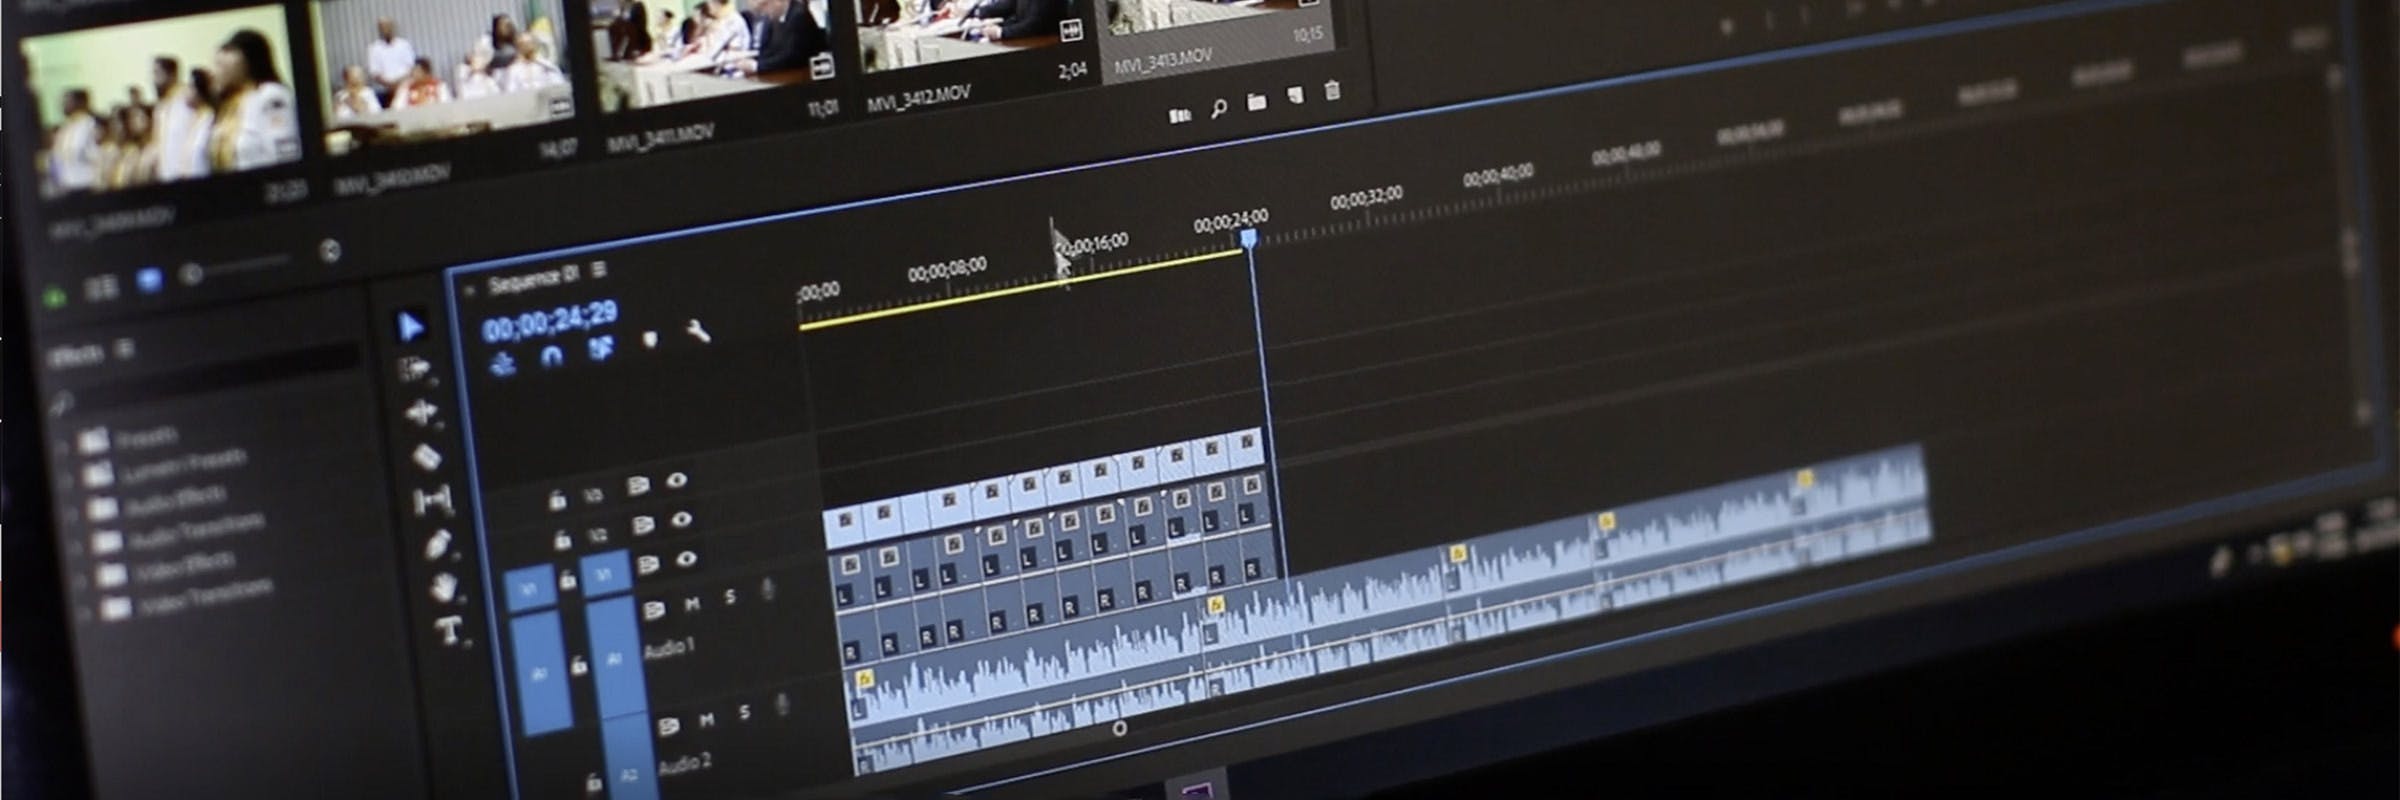 Adobe Premiere Pro Video Editing course